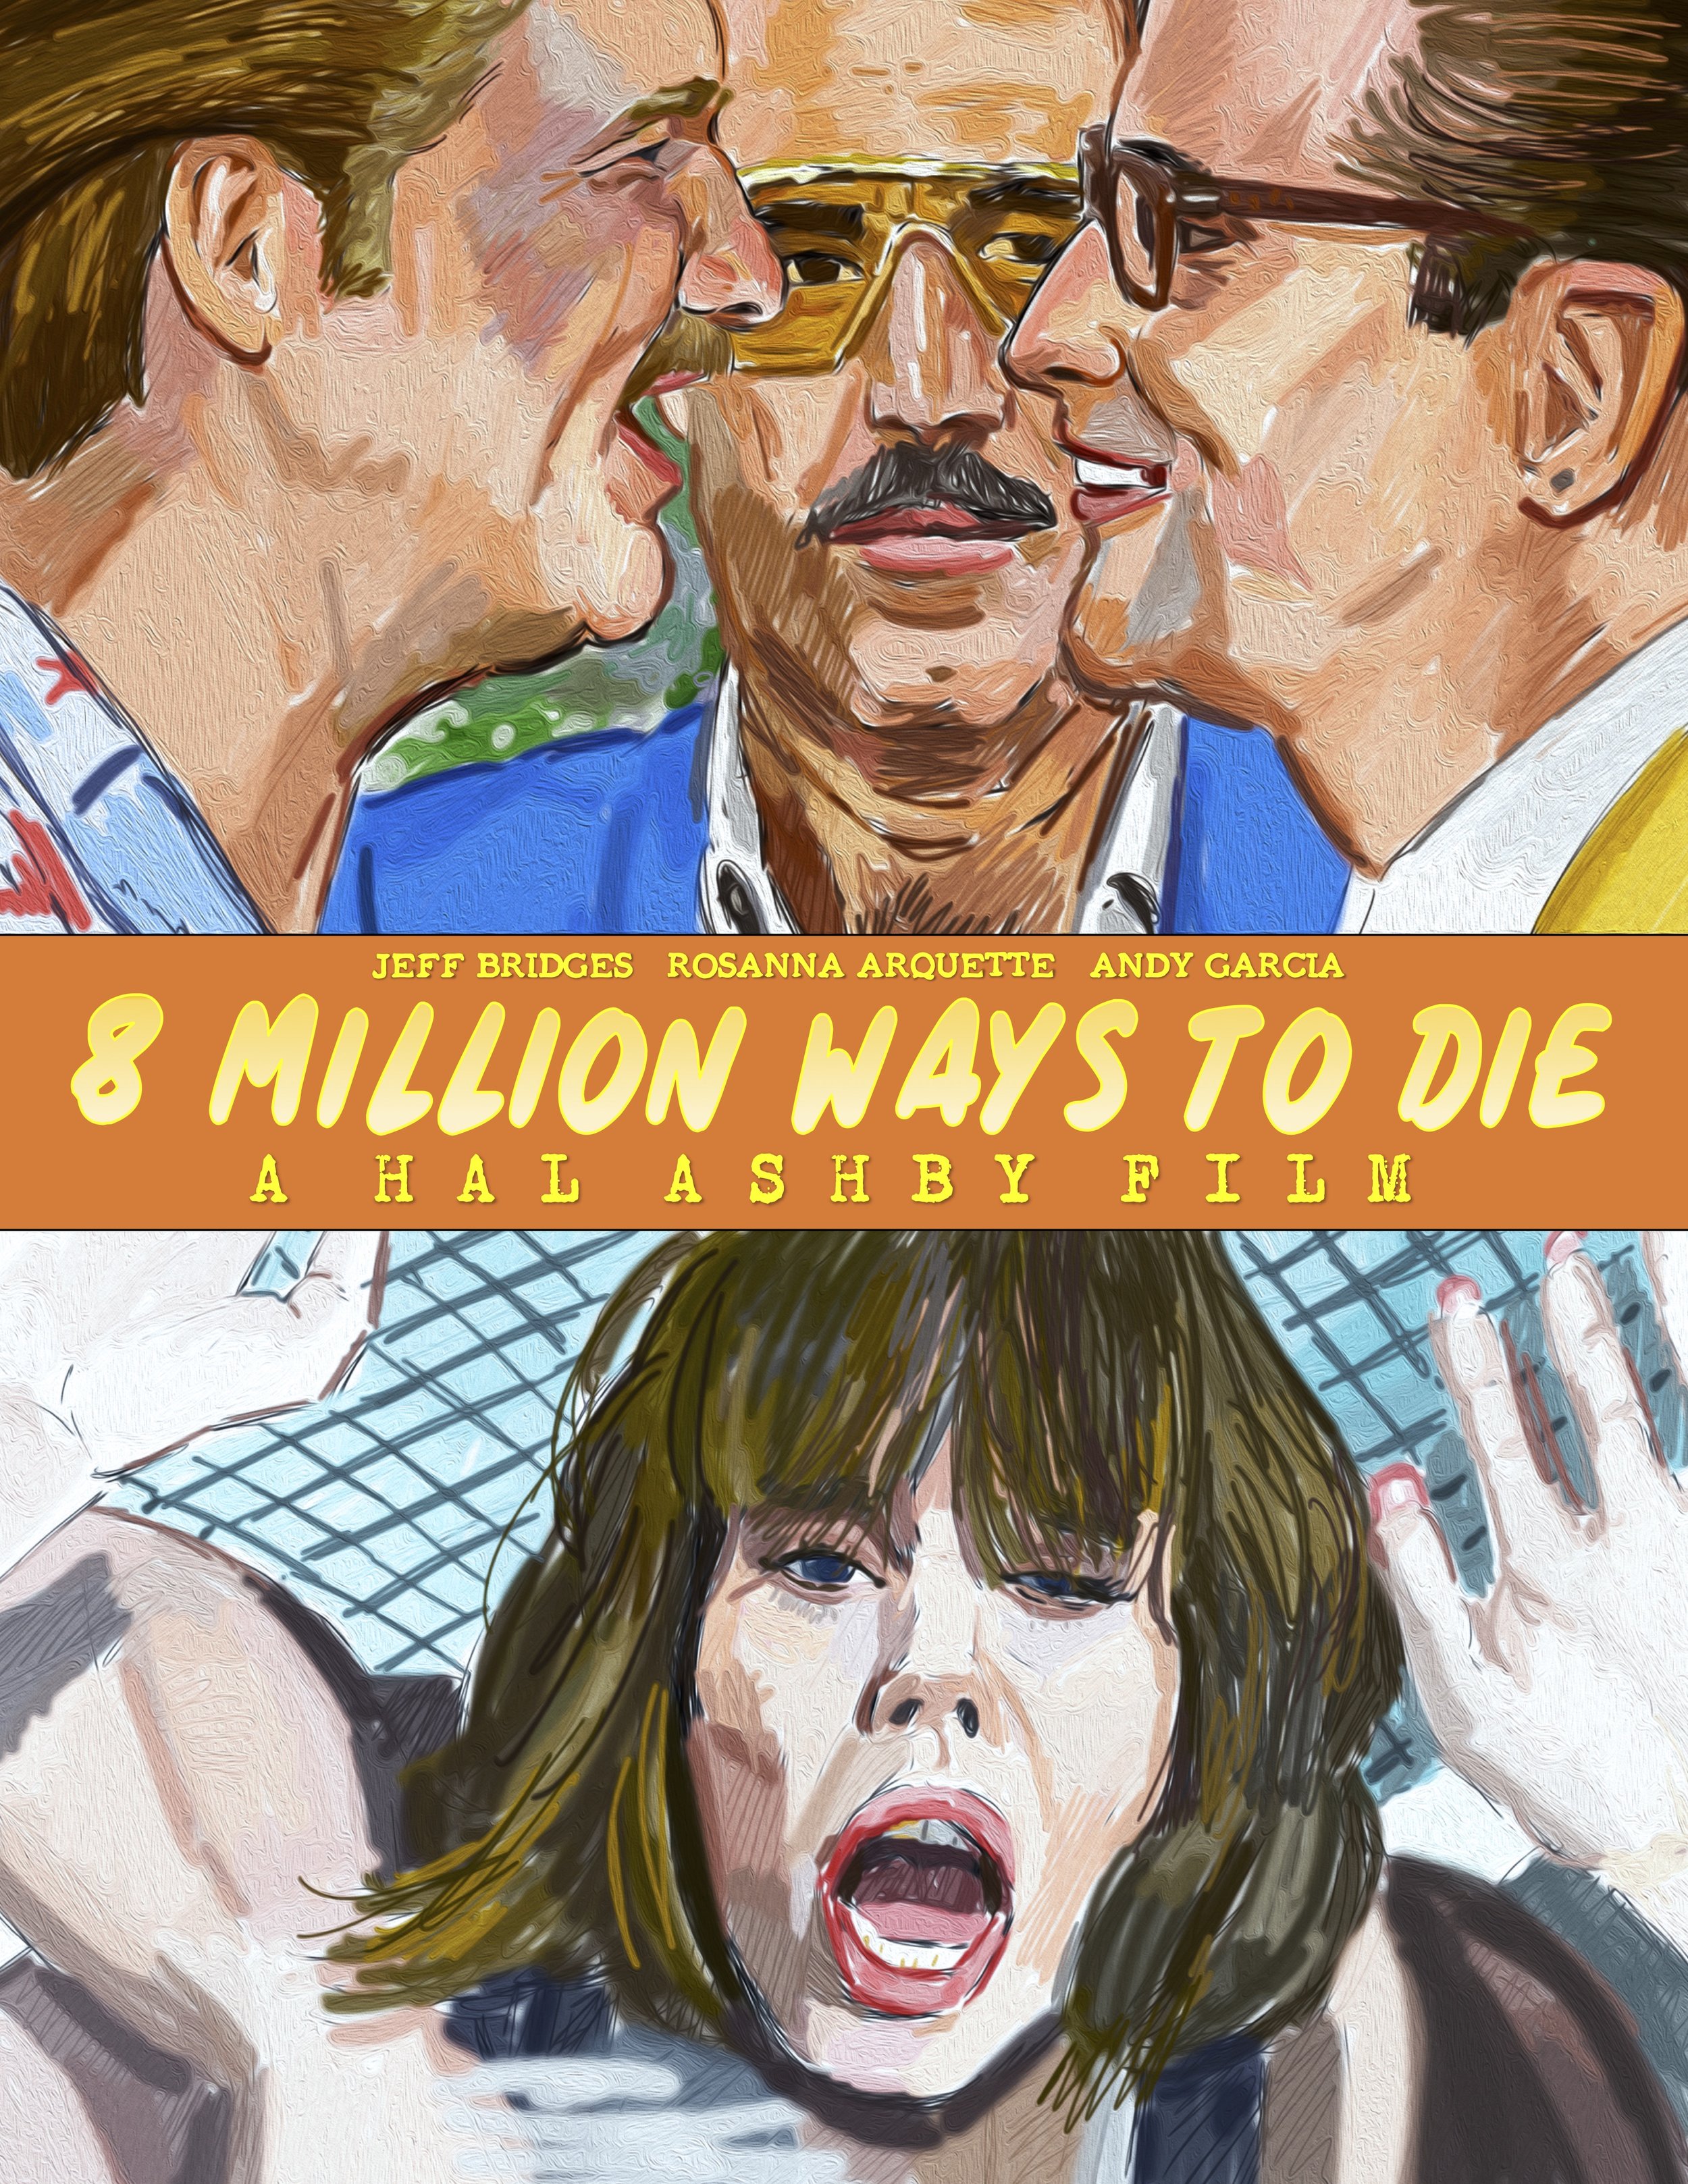 8 Million Ways to Die (1986)